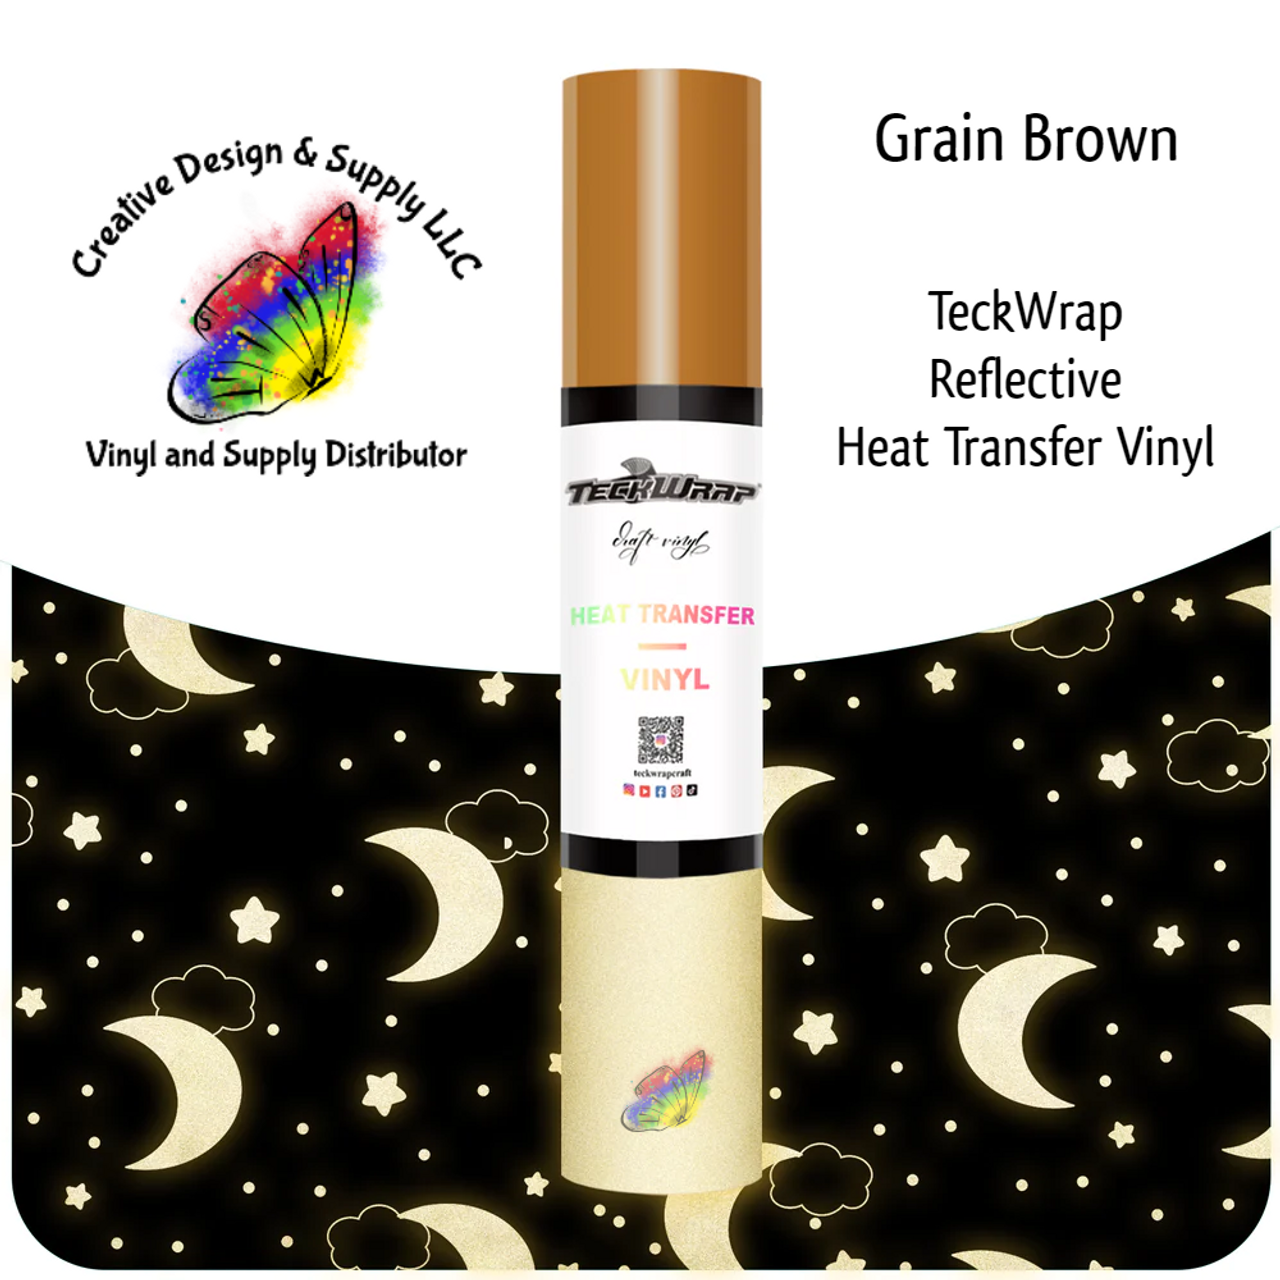 Teckwrap Reflective HTV | Grain Brown